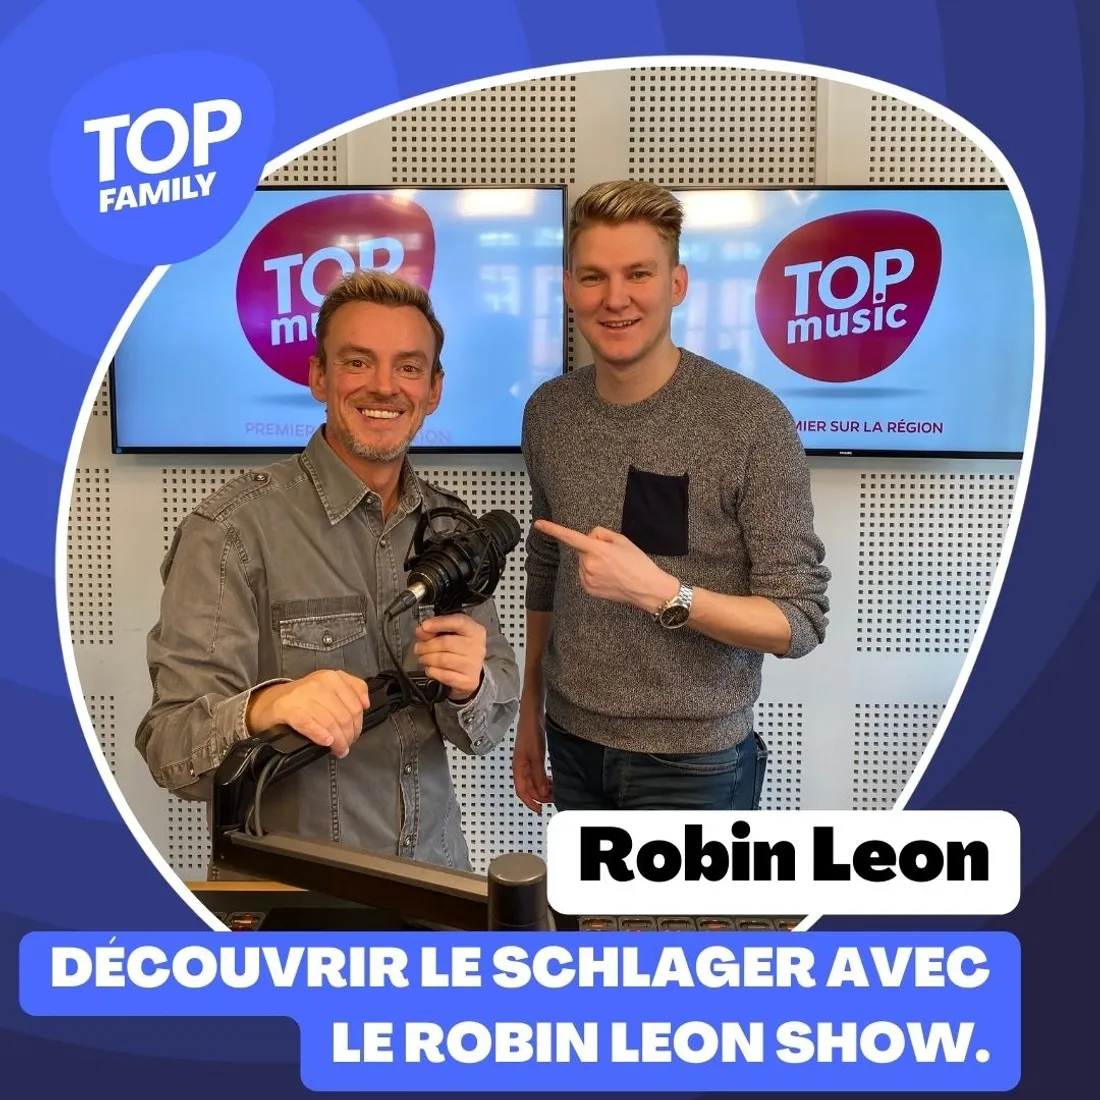 Top Family - Le “Robin Leon Show” : comment découvrir le schlager ? 